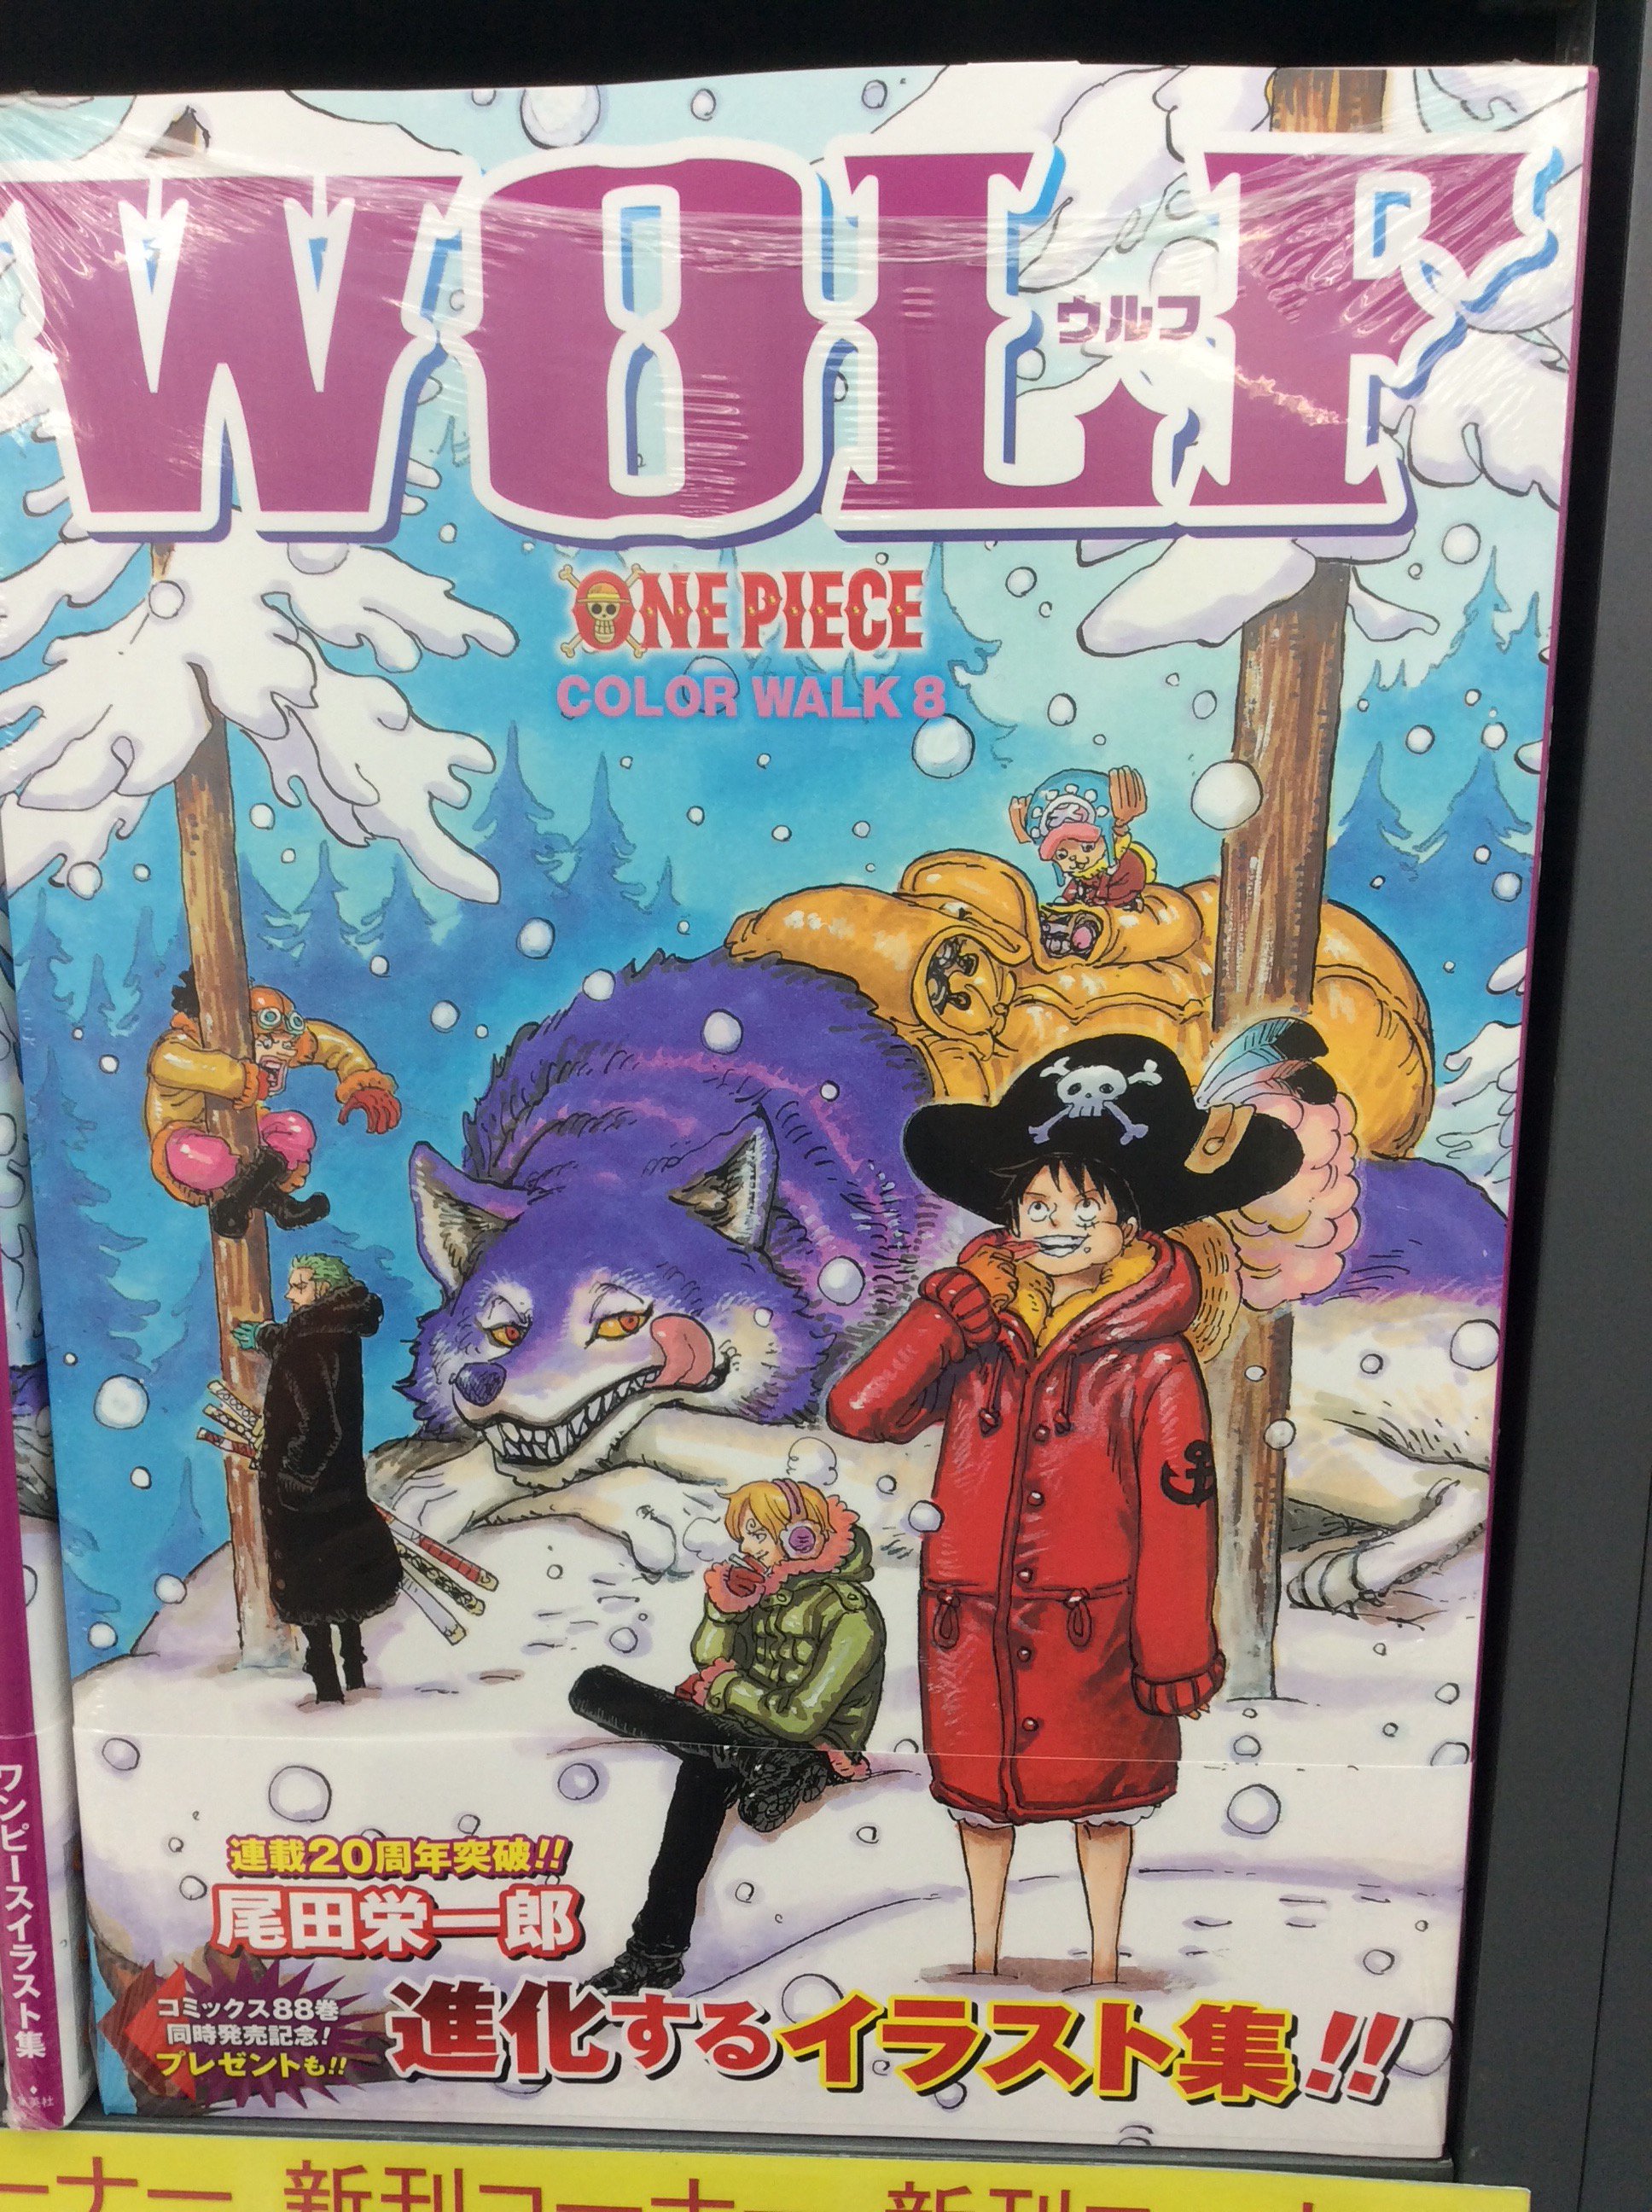 アニメイト秋葉原本館 Su Twitter 画集新刊情報 One Piece Picture Book 光と闇と ルフィとエースとサボ の物語 One Piece ワンピース イラスト画集 Color Walk 8 Wolf 入荷致しました 発売中コミック最新刊 One Piece ワンピース と合わせてお